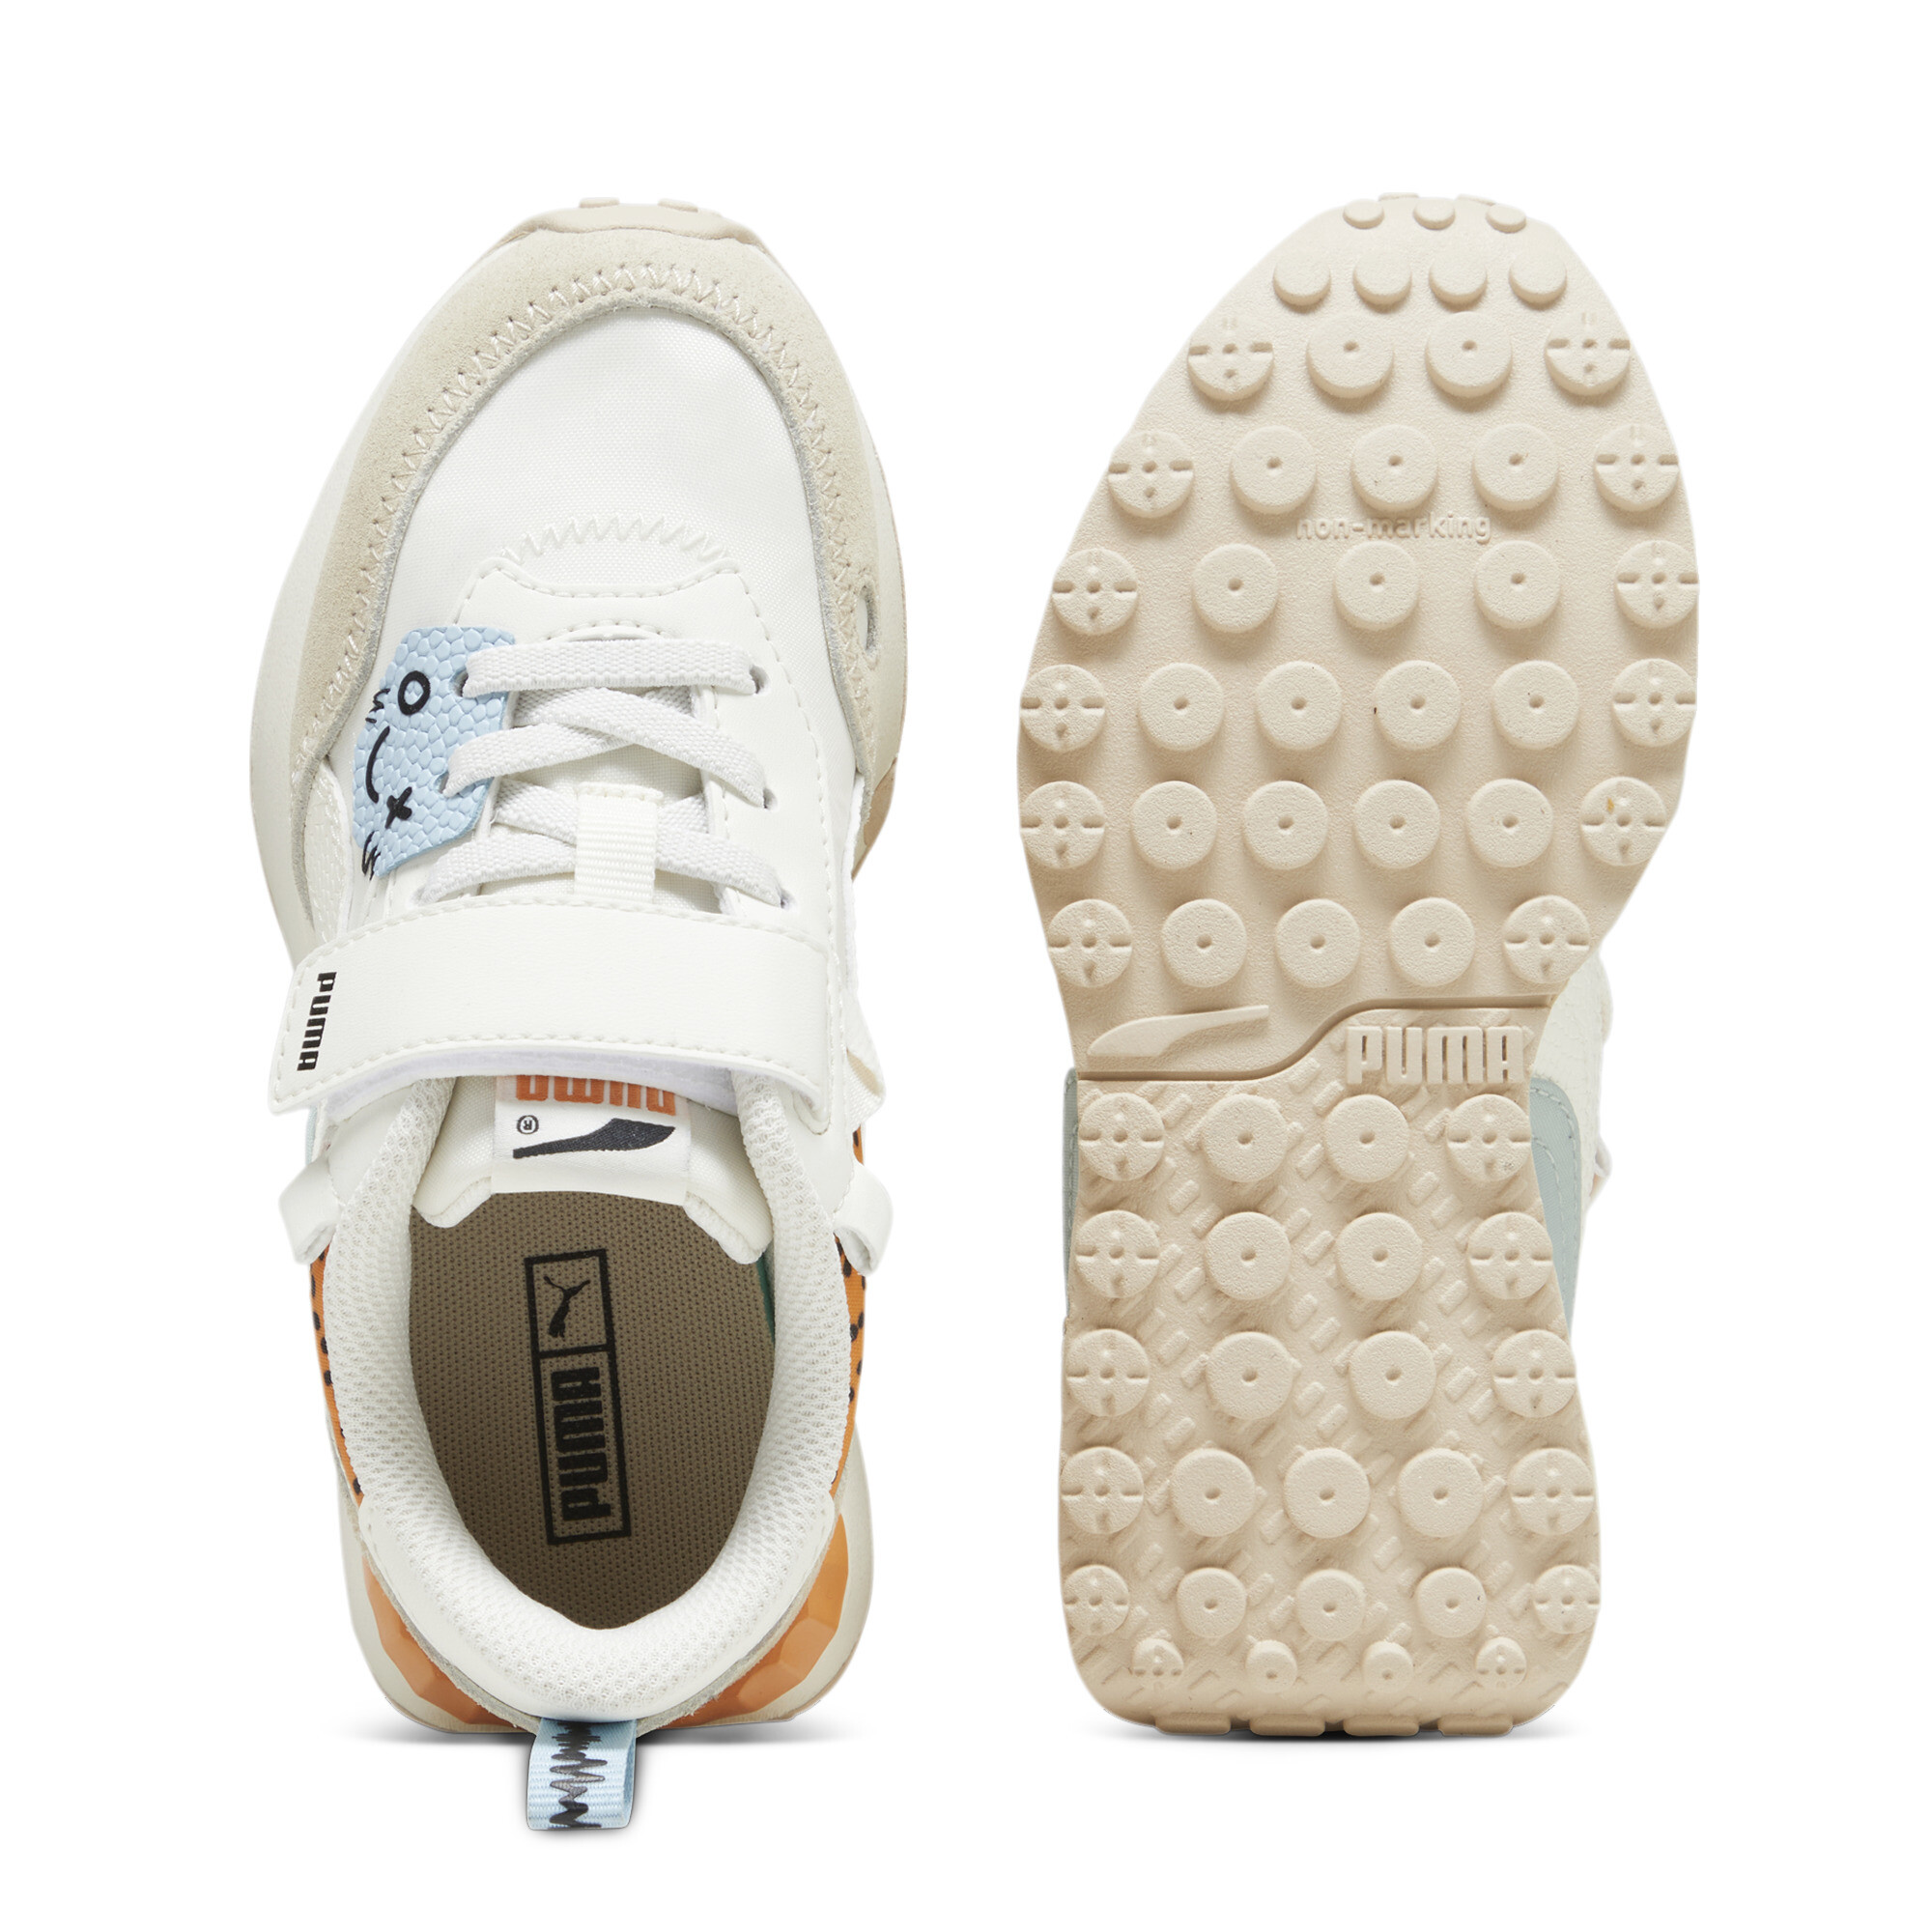 Kids' PUMA Rider FV Mix Match Sneakers In White, Size EU 31